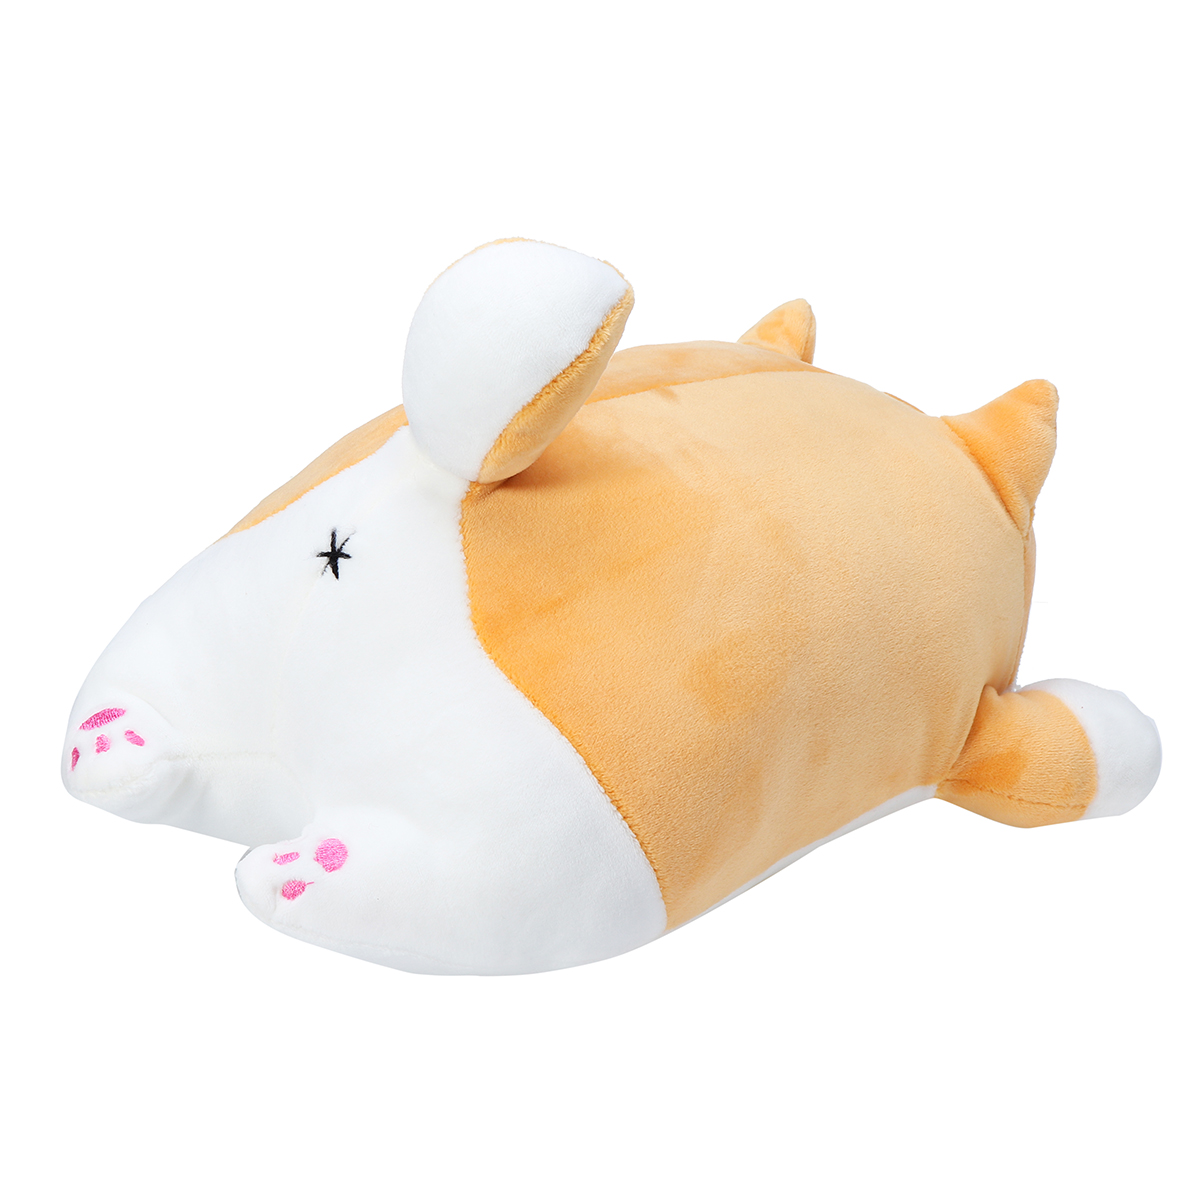 3550CM-Kawaii-Cartoon-Cute-Shiba-Inu-Soft-Cushion-Pillow-Dog-Stuffed-Plush-Toy-1422357